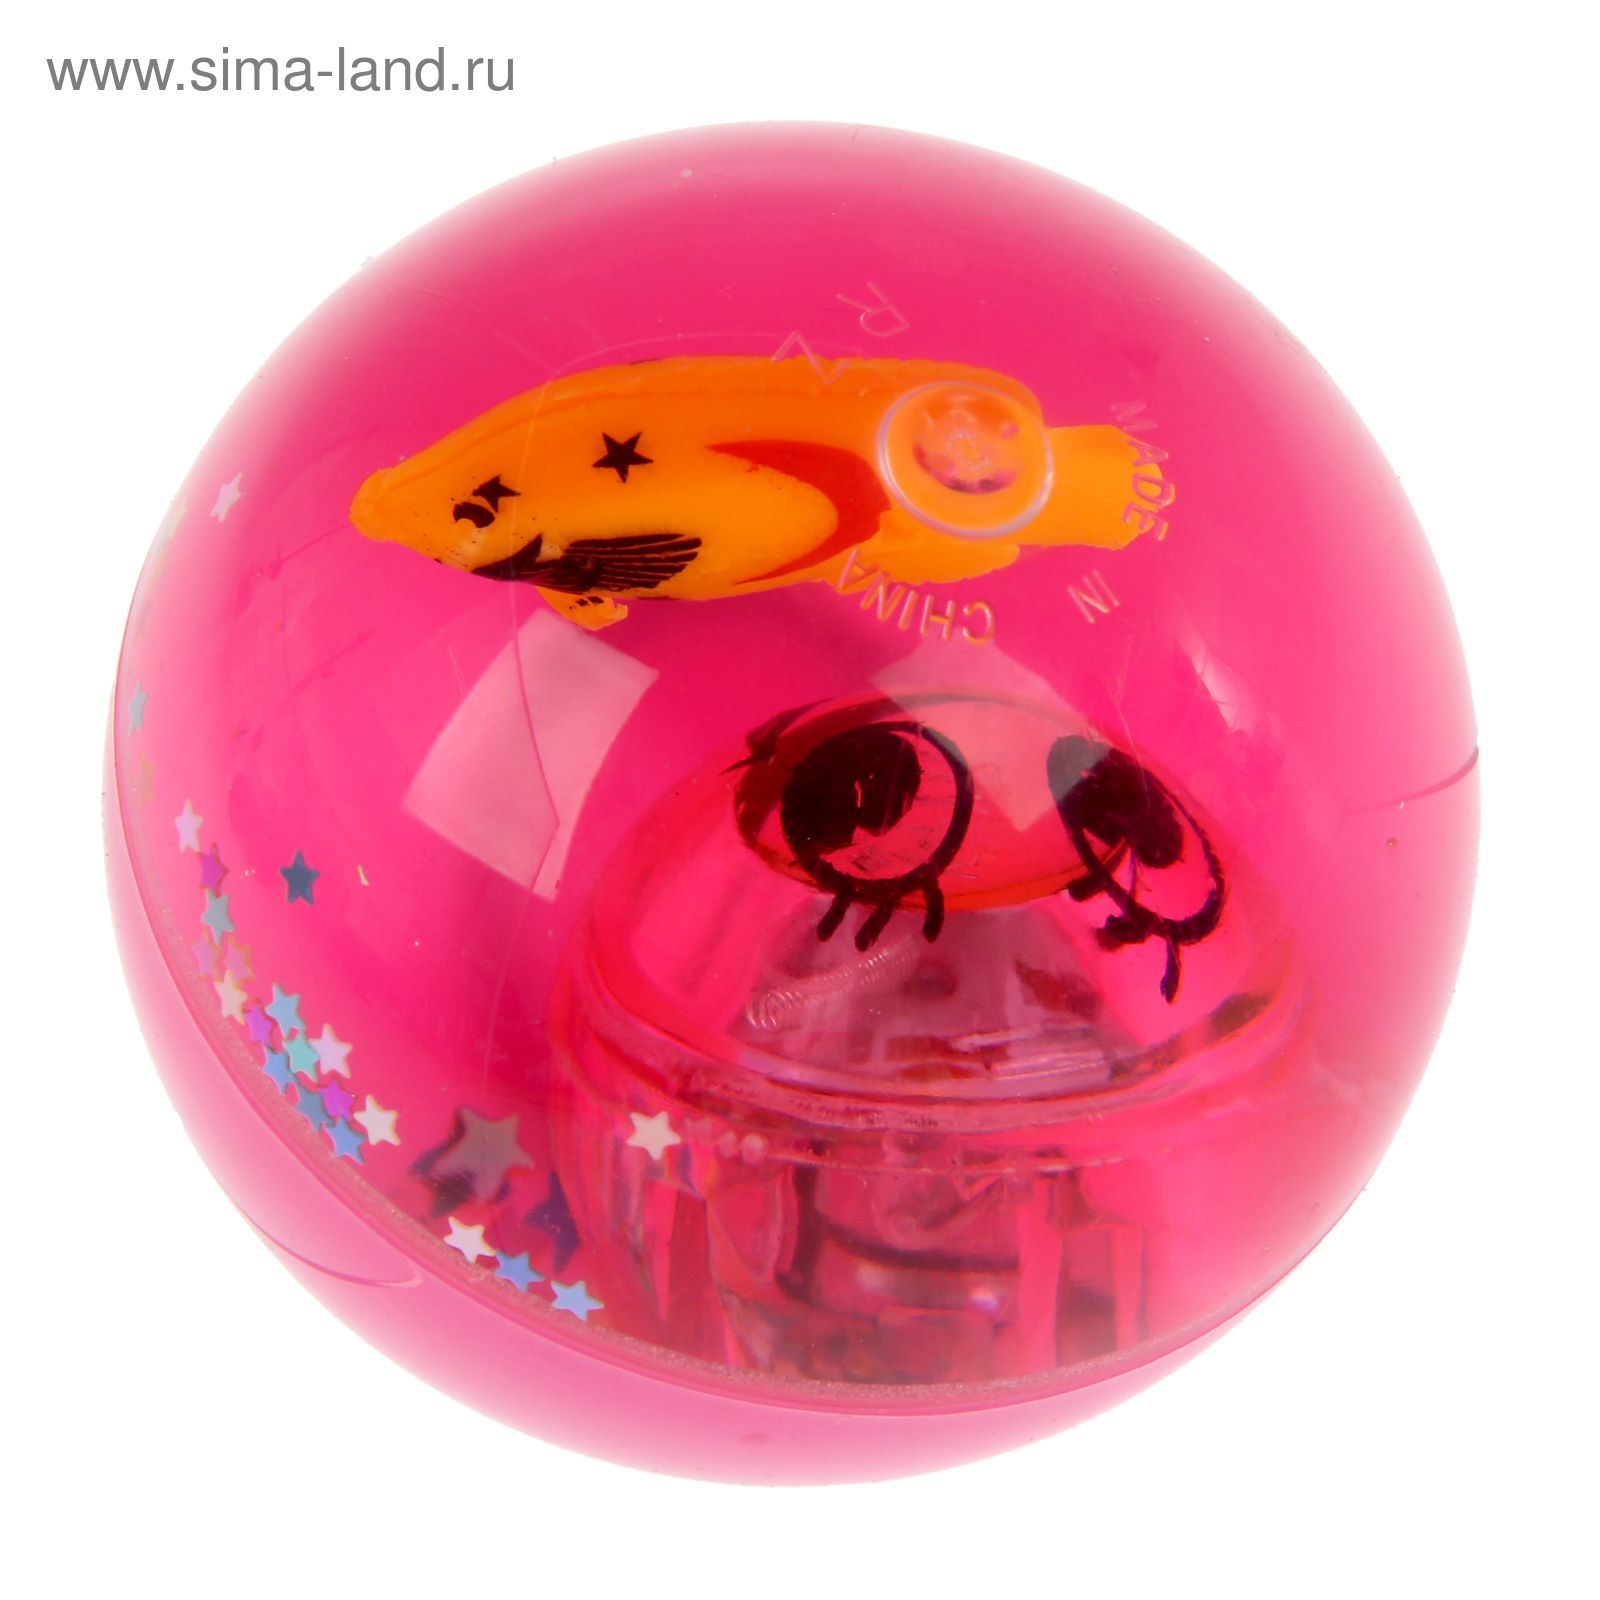 Мяч световой "Смайлы" с водой 6,5 см, цвета МИКС